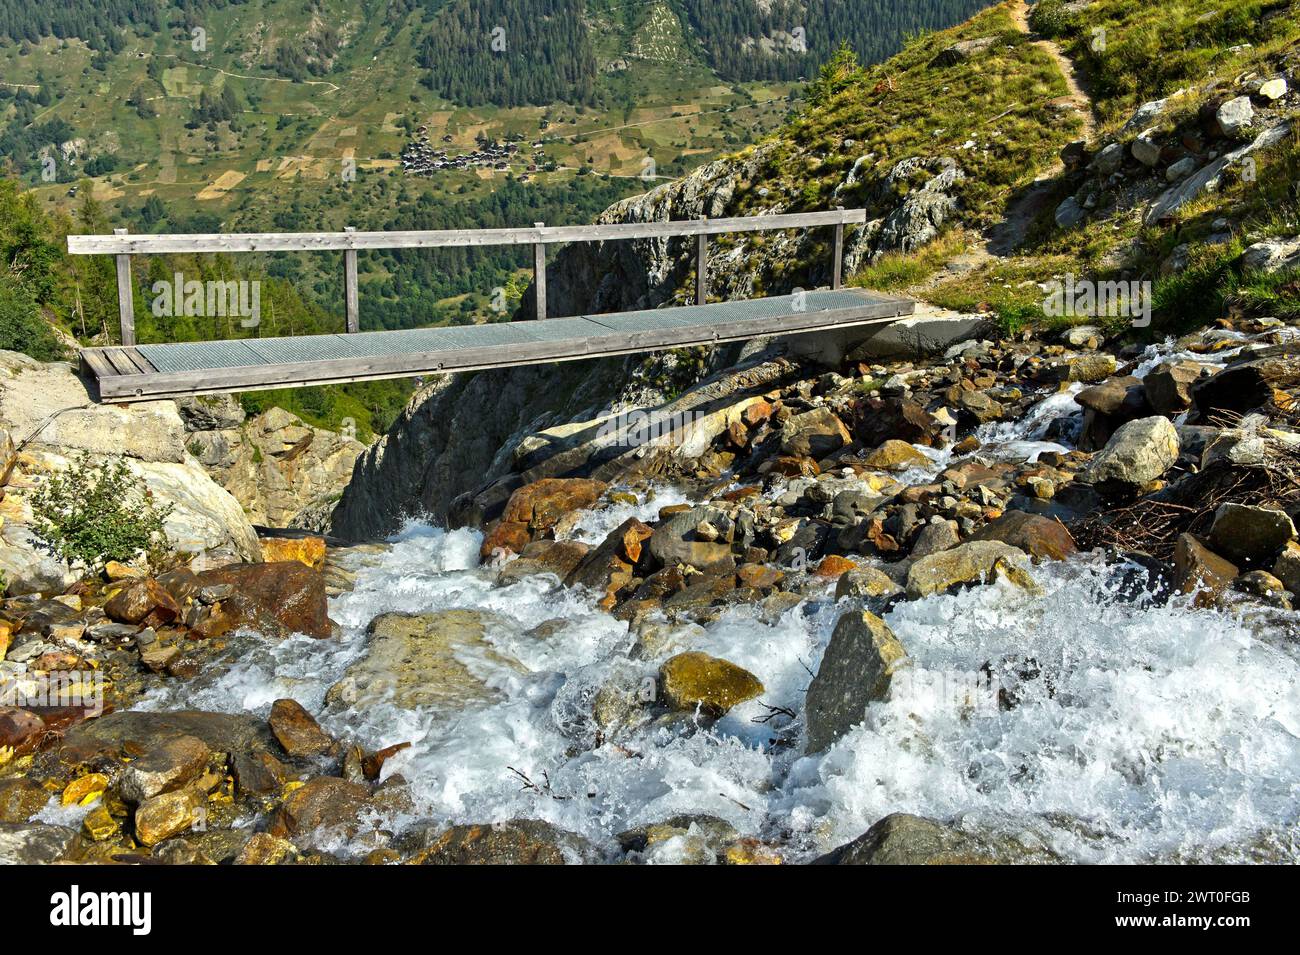 Stretto ponte sul torrente Naestbach sulla strada per il rifugio Bietschhorn, vicino a Blatten, Loetschental, Vallese, Svizzera Foto Stock